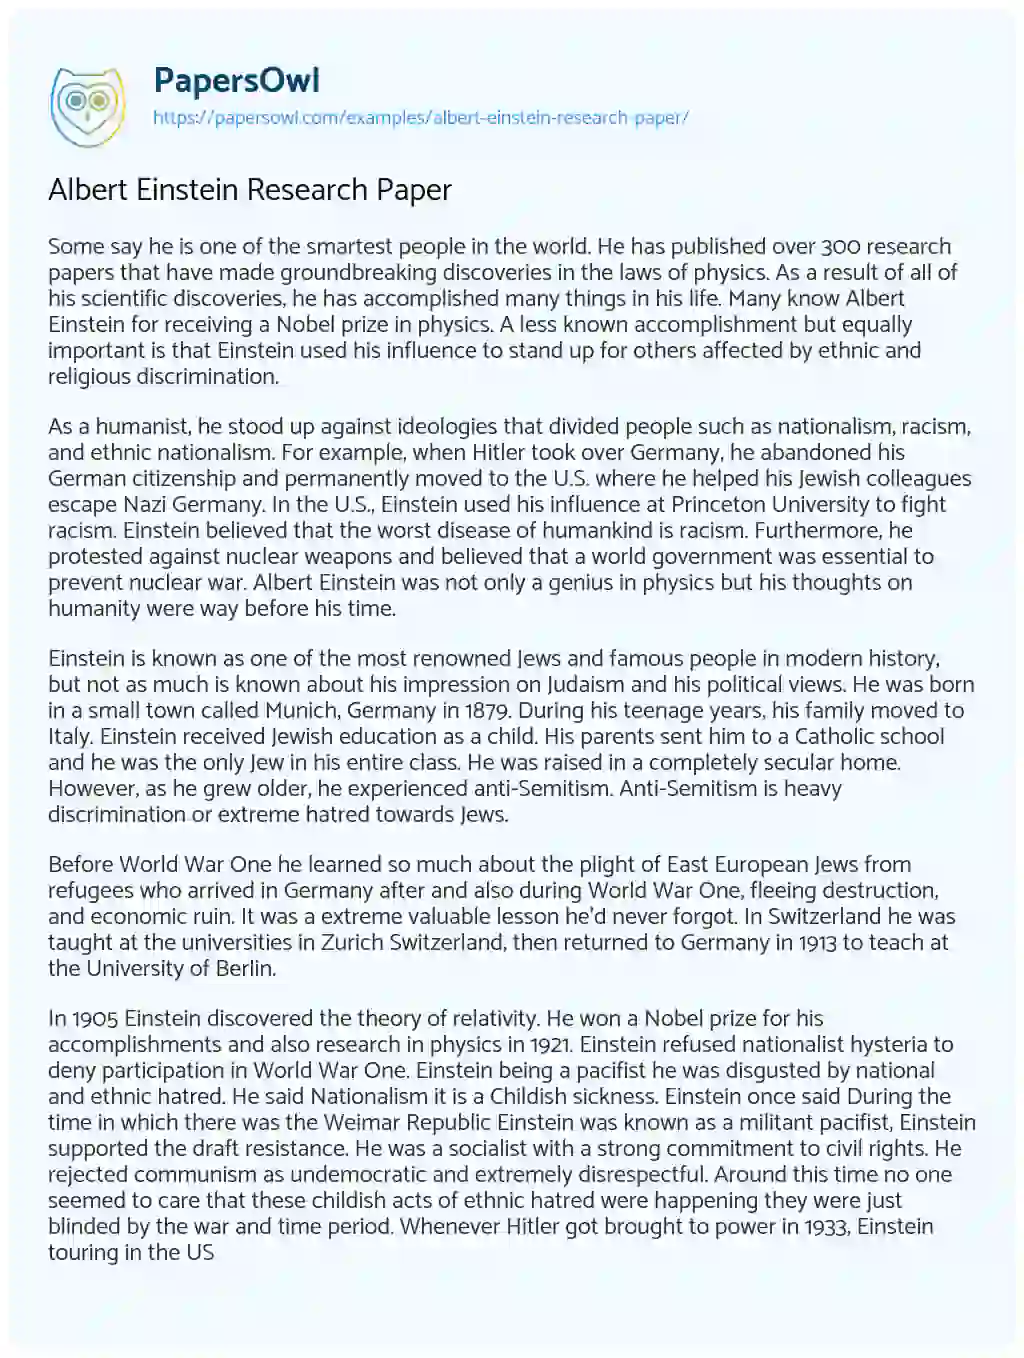 Essay on Albert Einstein Research Paper